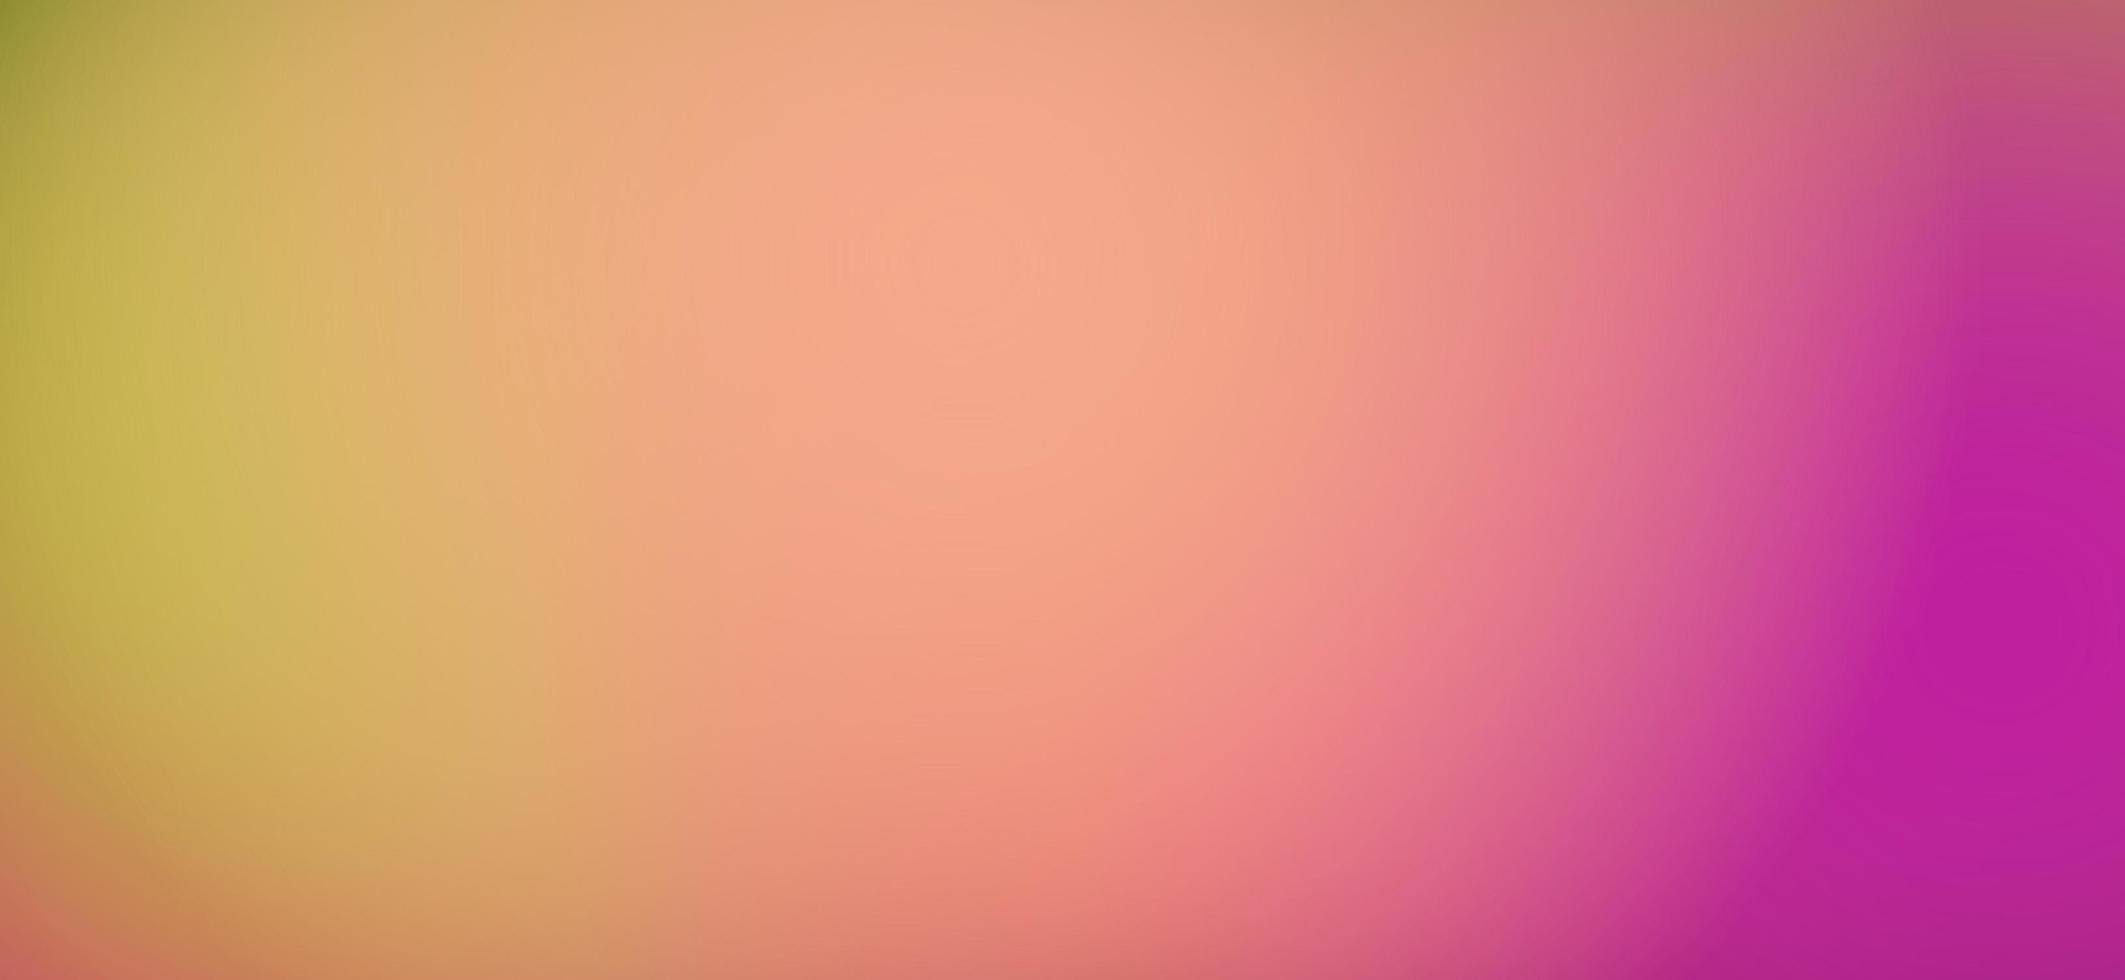 Resumo desfocar fundo gradiente com tendências de cores pastel rosa, roxo, roxo, vermelho, laranja, amarelo e azul para conceito de aprovação, papel de parede, web, apresentação e impressões. ilustração. foto